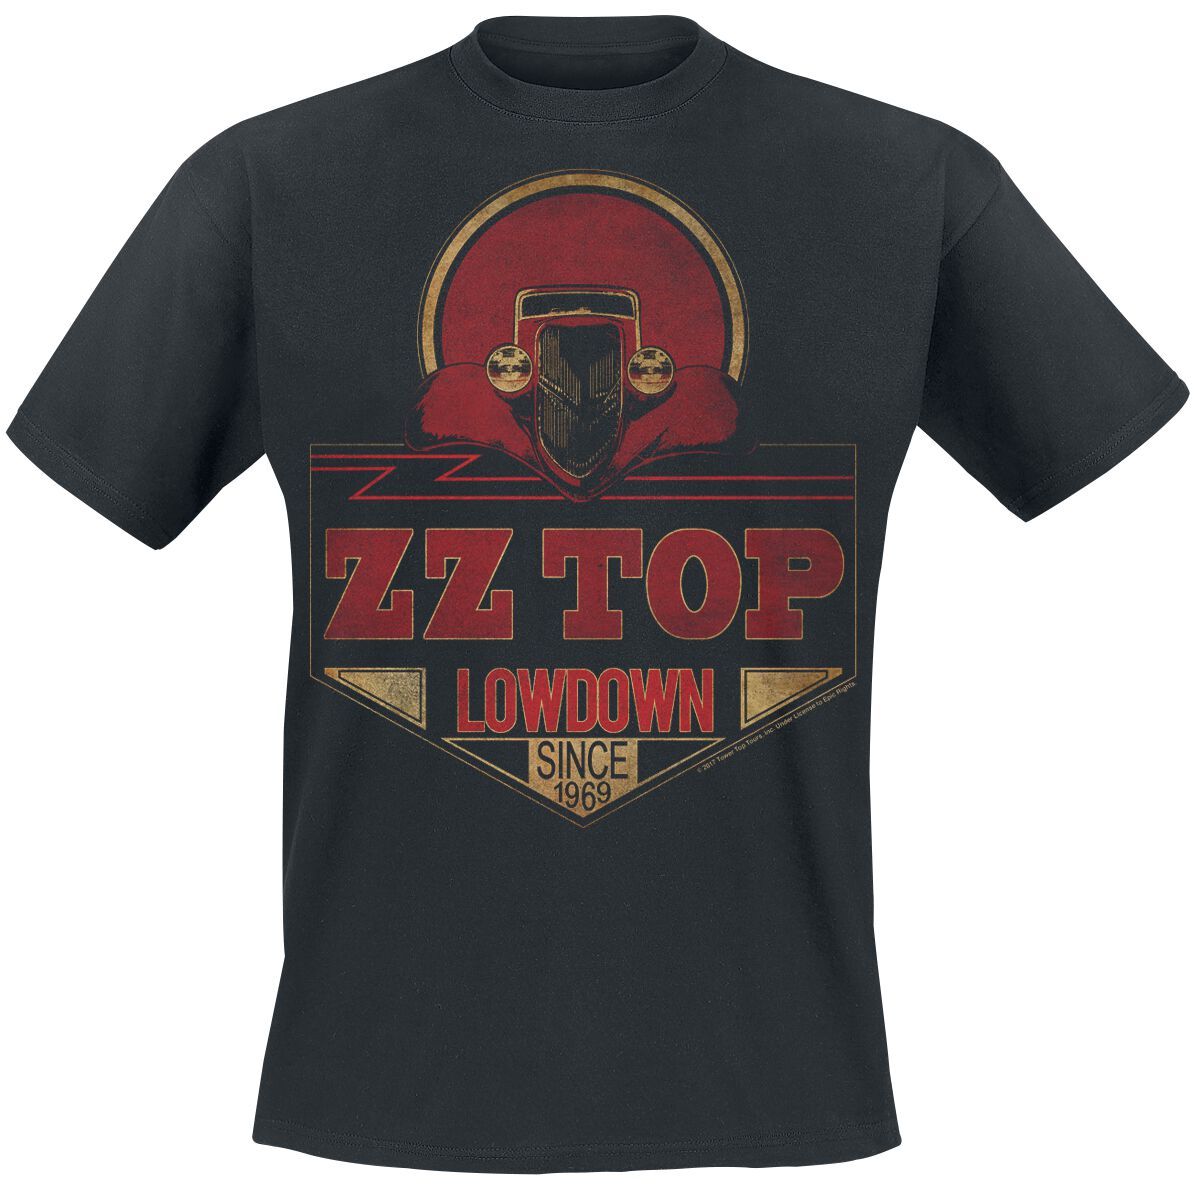 Image of ZZ Top Lowdown Since 1969 T-Shirt schwarz